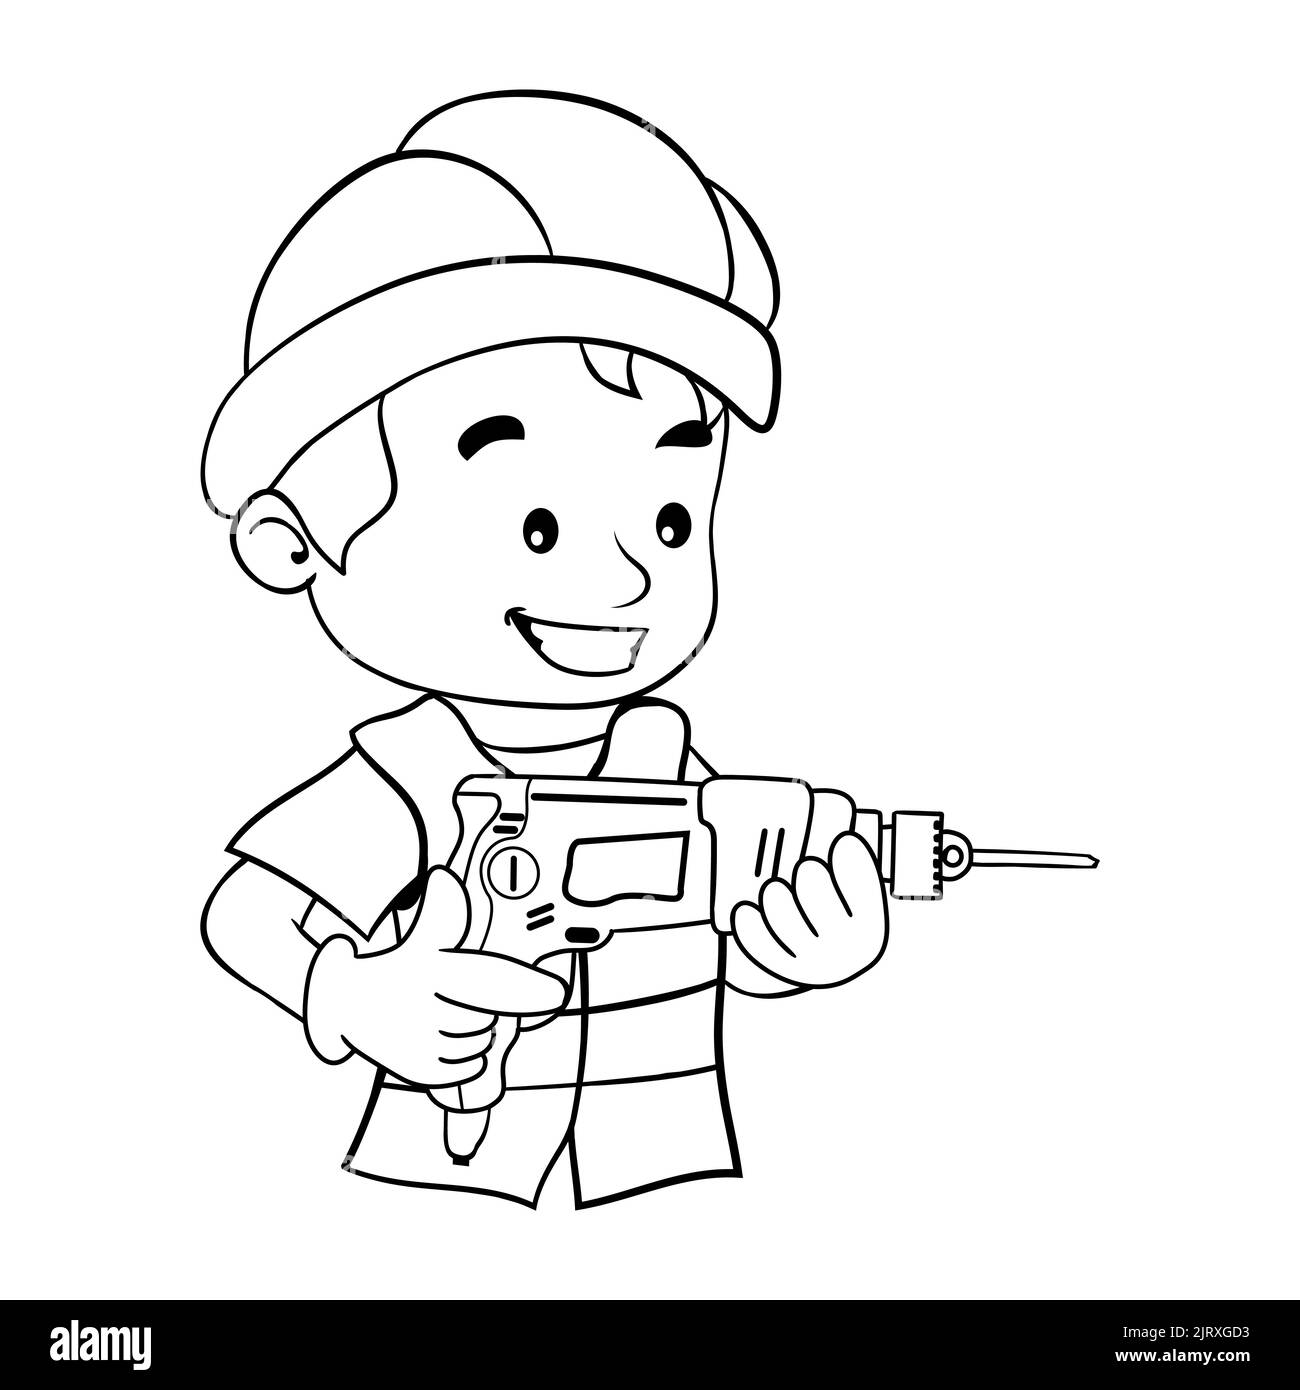 Disegno di cartoni animati del lavoratore con il suo casco di sicurezza che aziona un trapano. Lavoratore di costruzione industriale o carpenteria. Pagina da colorare Illustrazione Vettoriale